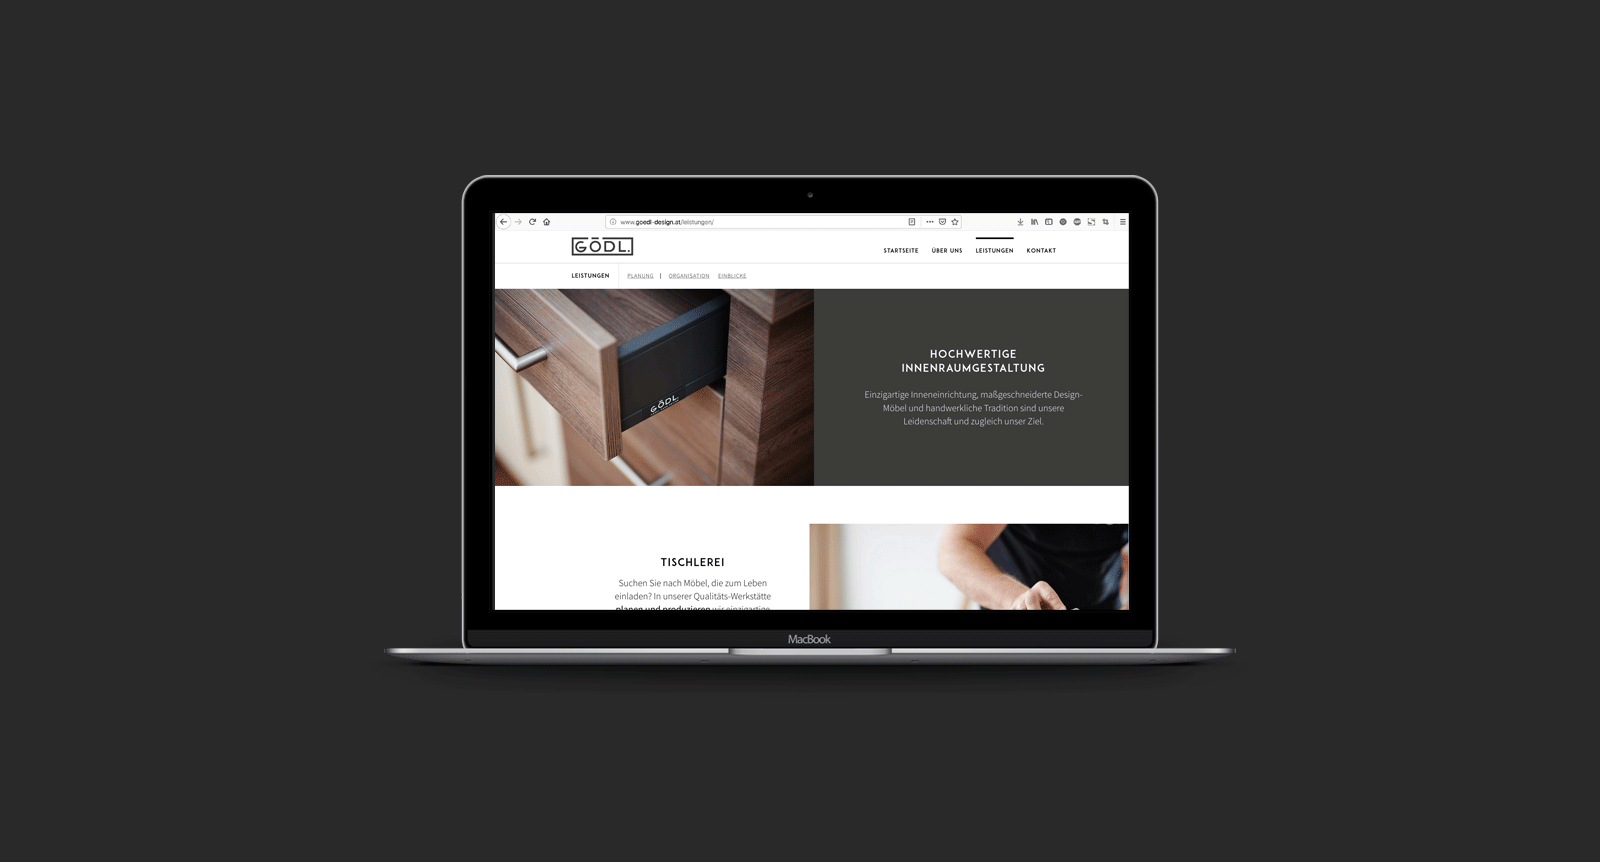 Gödl Christian – Webdesign